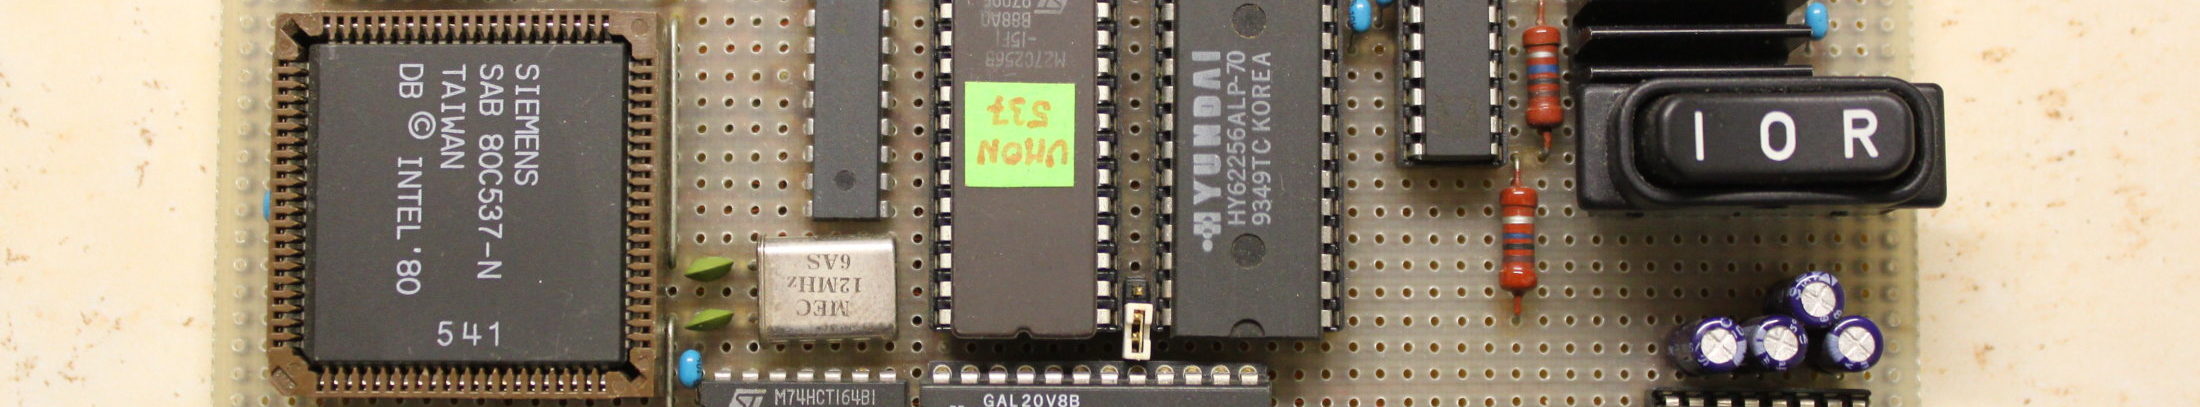 Jednodeskový mikropočítač s 80C537